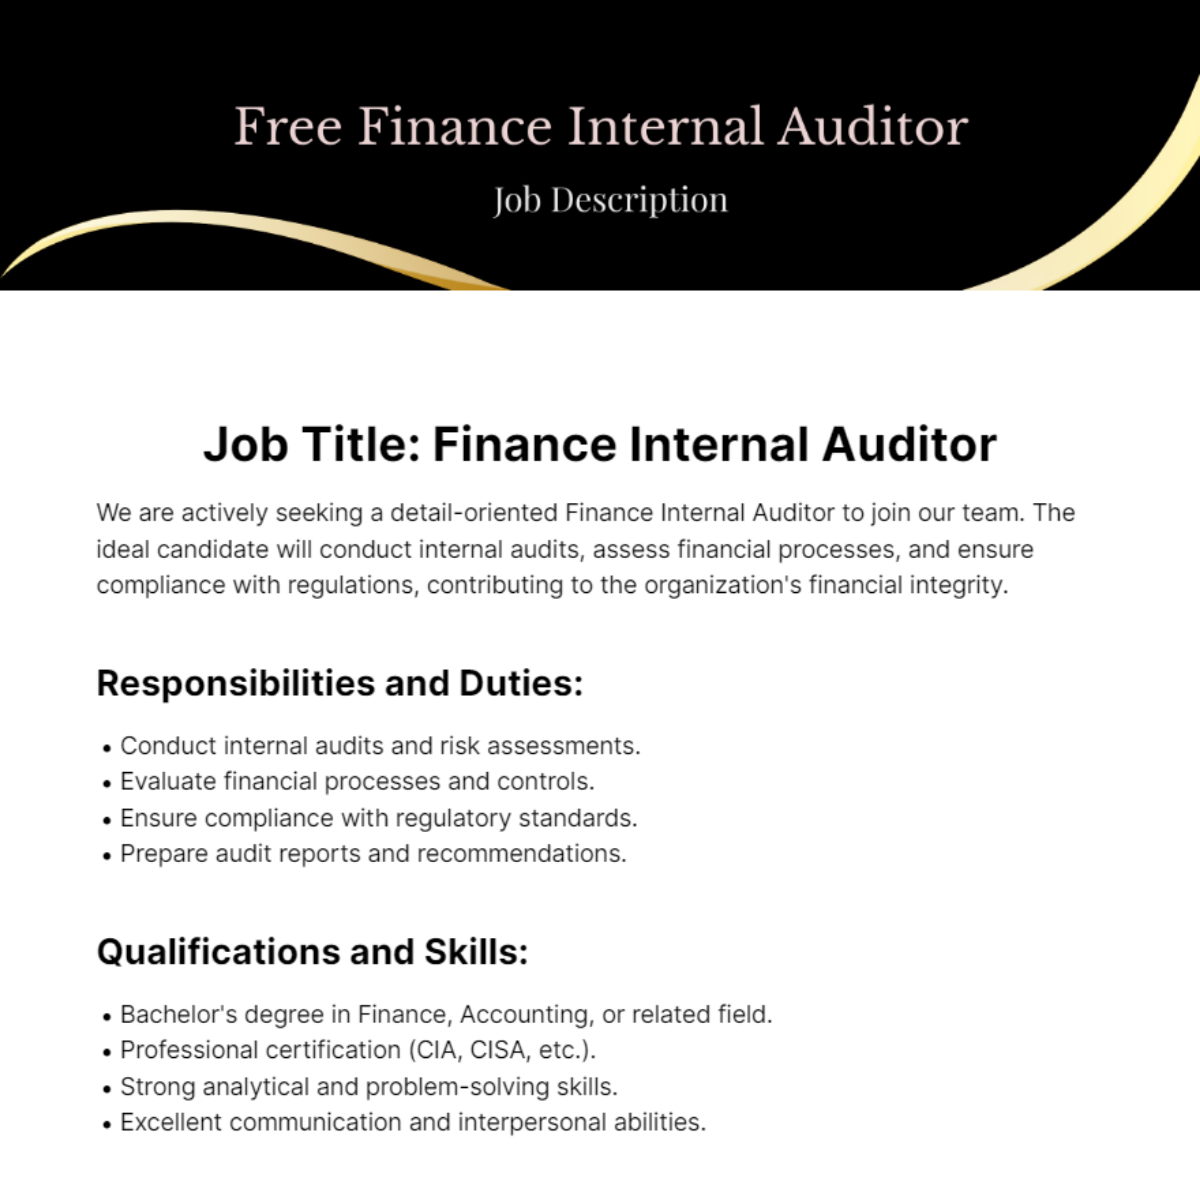 Finance Internal Auditor Job Description Template